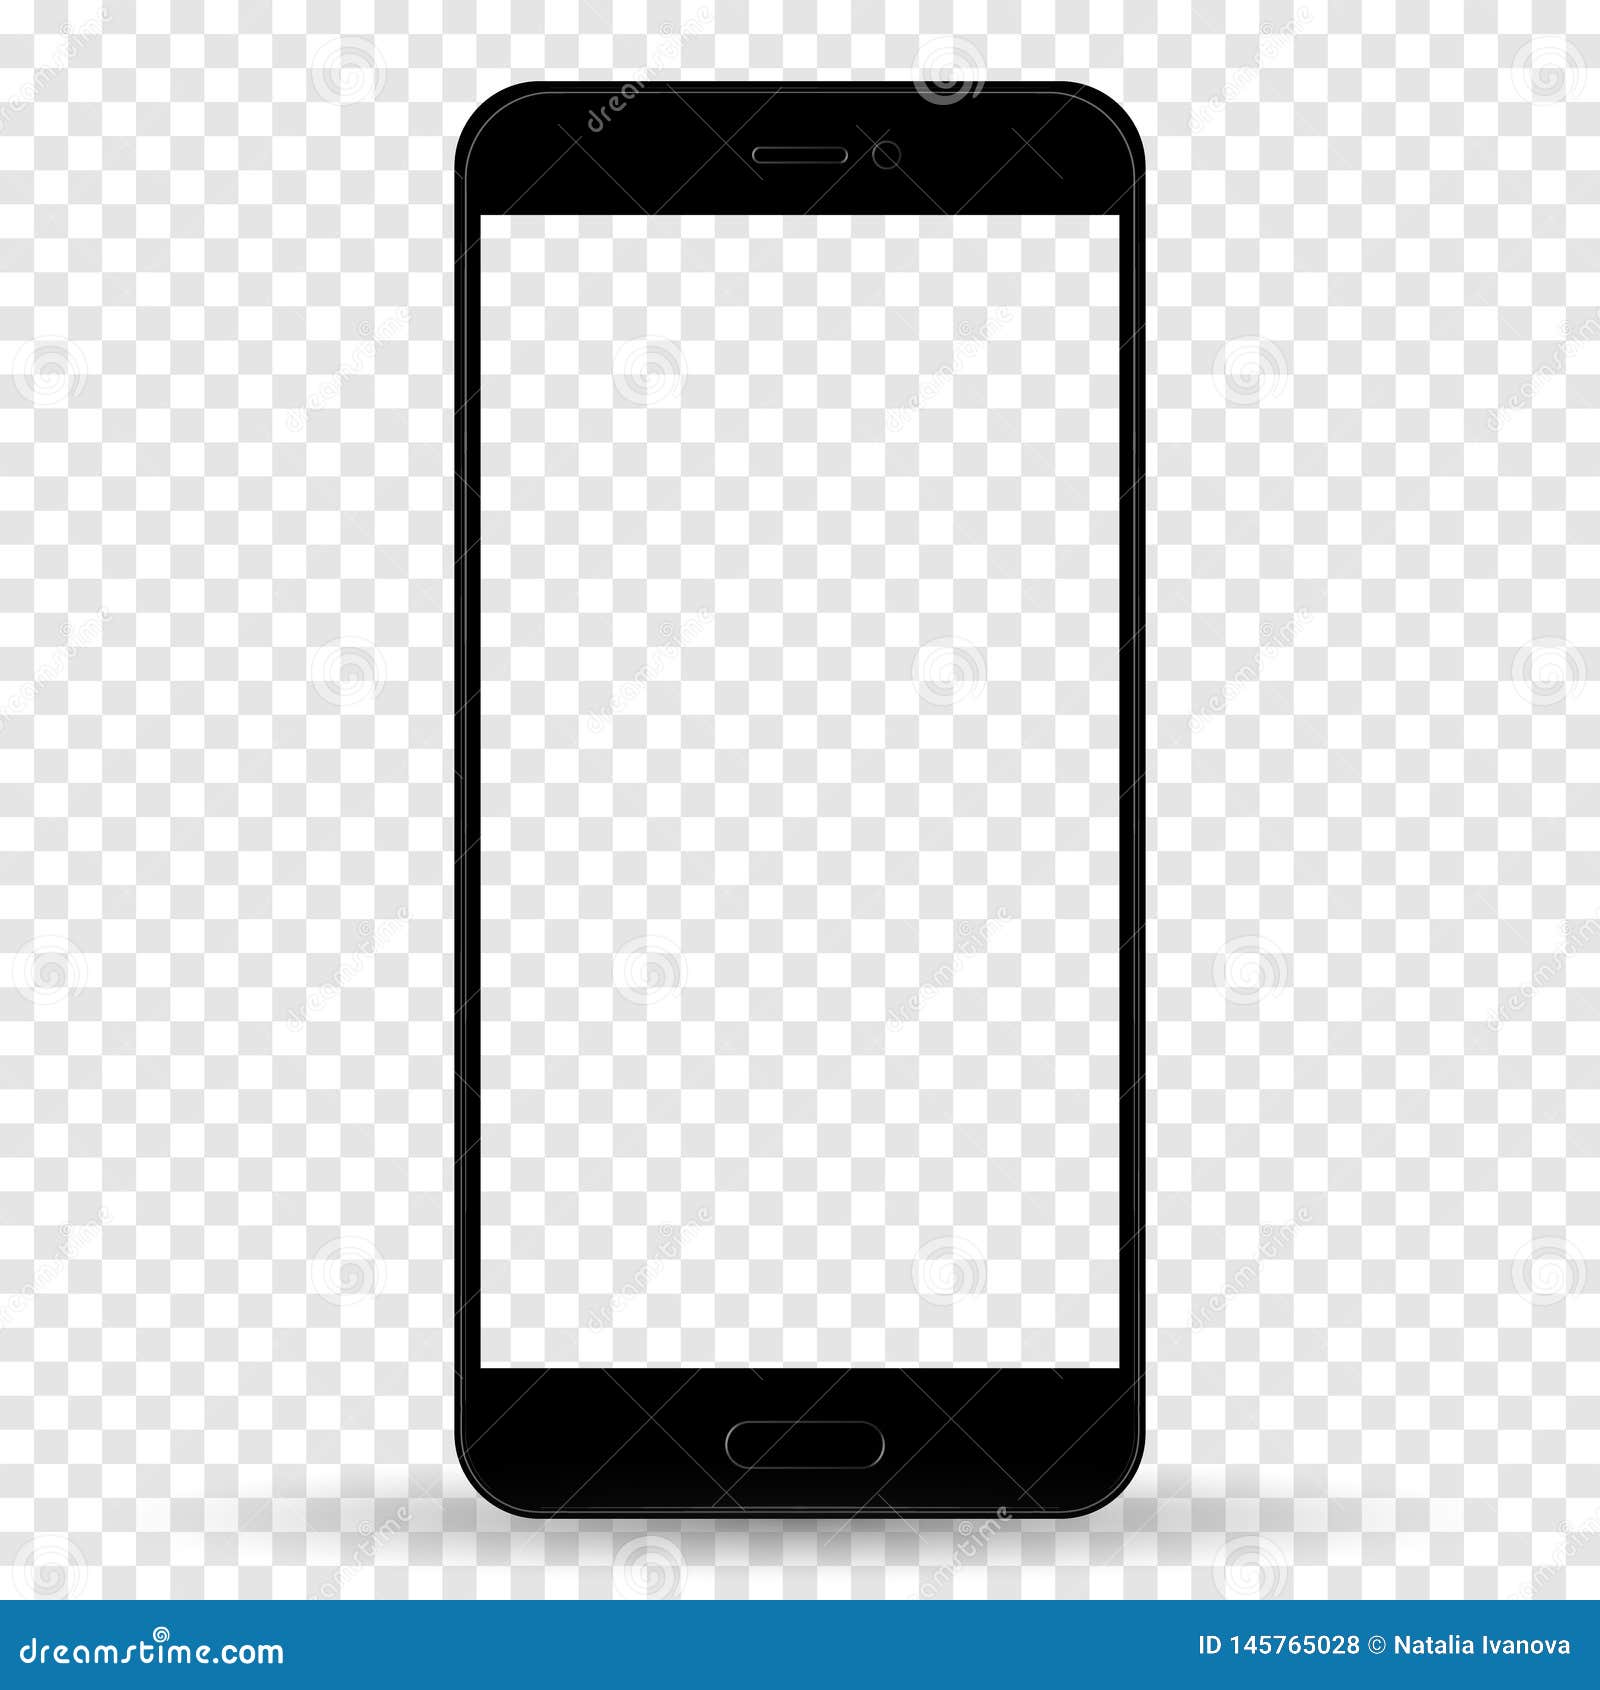 Mẫu Black Smartphone Mockup thật sự hoàn hảo và đẹp đến từng chi tiết. Nhấp vào hình ảnh liên quan để xem và thấy rằng chiếc điện thoại này là một sản phẩm chất lượng và thật sự đáng để sở hữu.